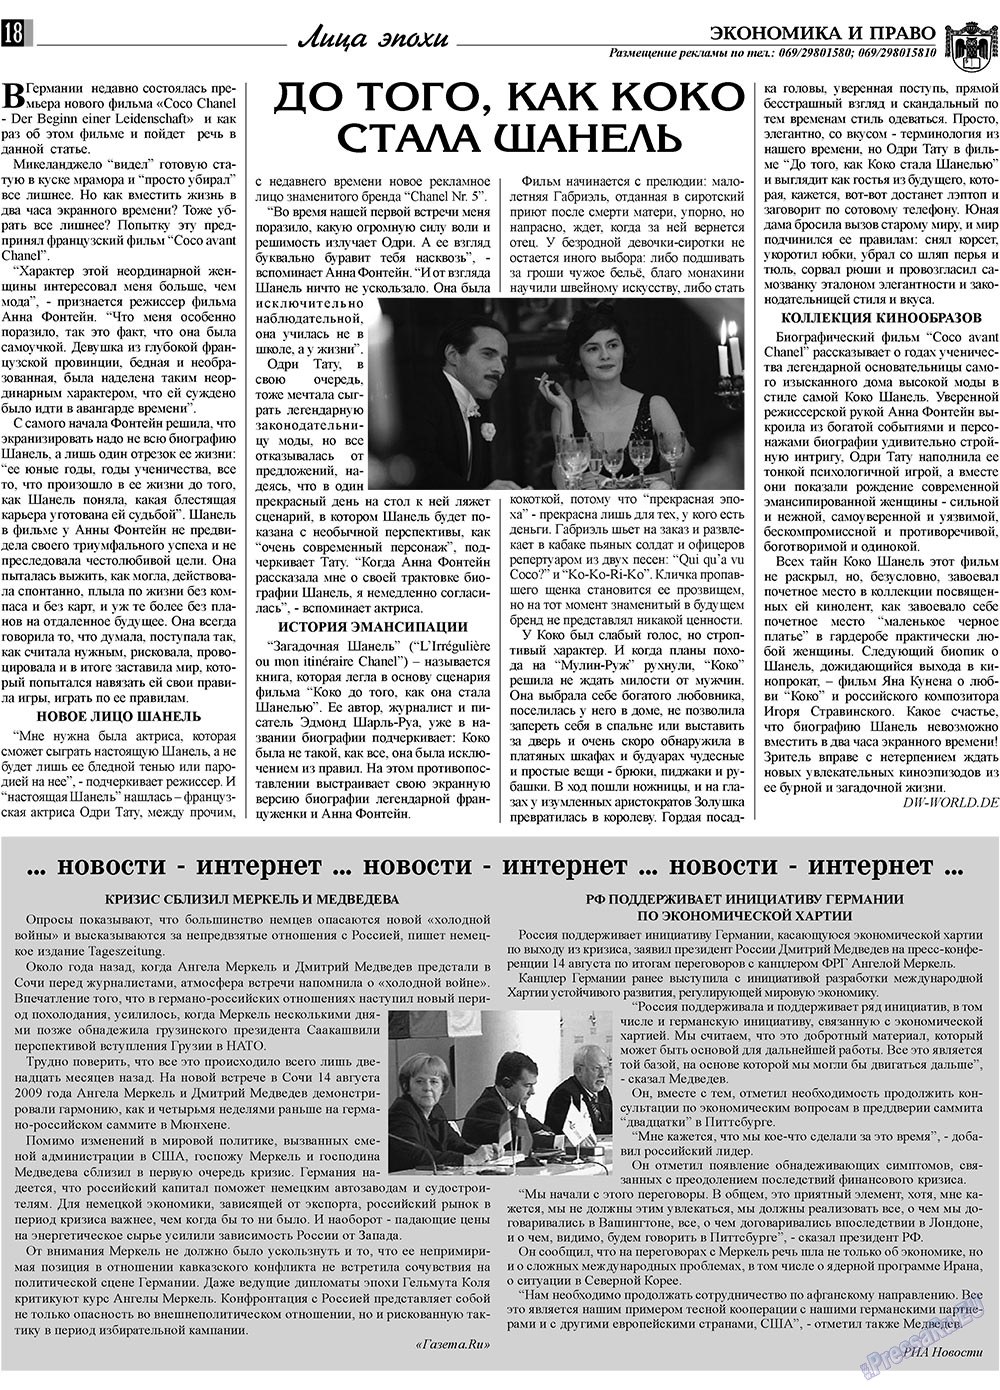 Экономика и право, газета. 2009 №9 стр.18